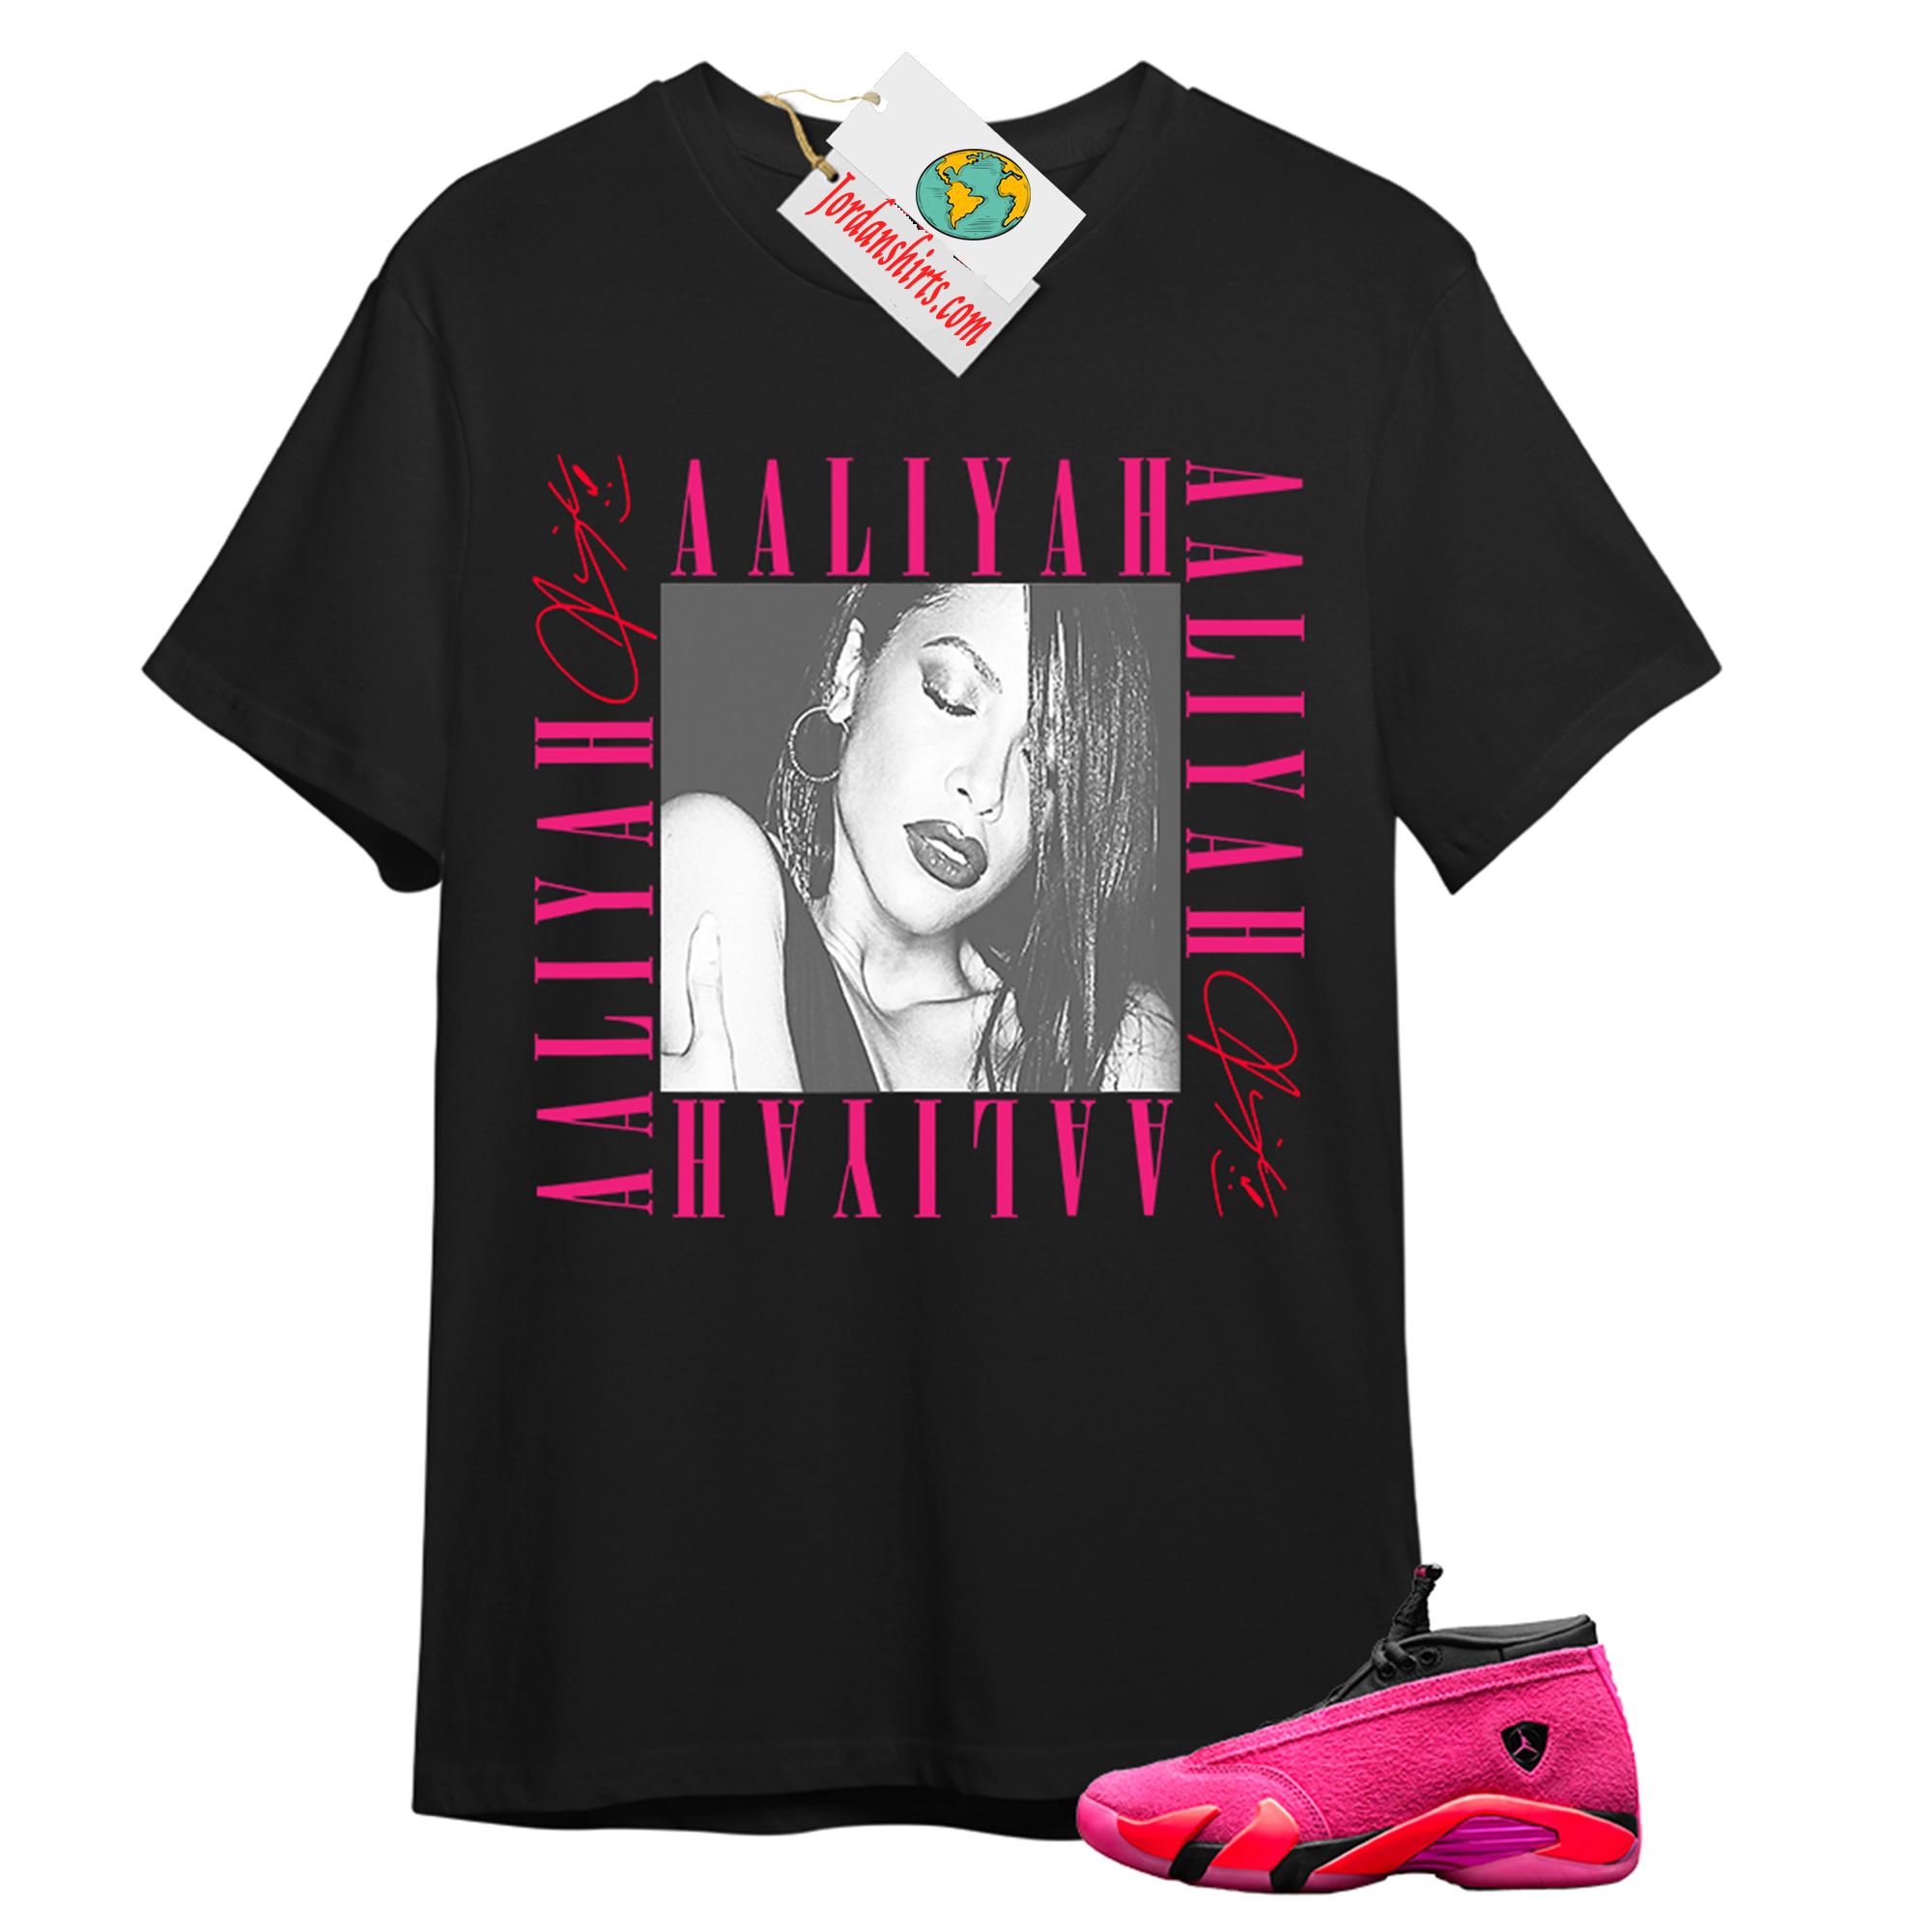 Jordan 14 Shirt, Aaliyah Box Black T-shirt Air Jordan 14 Wmns Shocking Pink 14s Size Up To 5xl